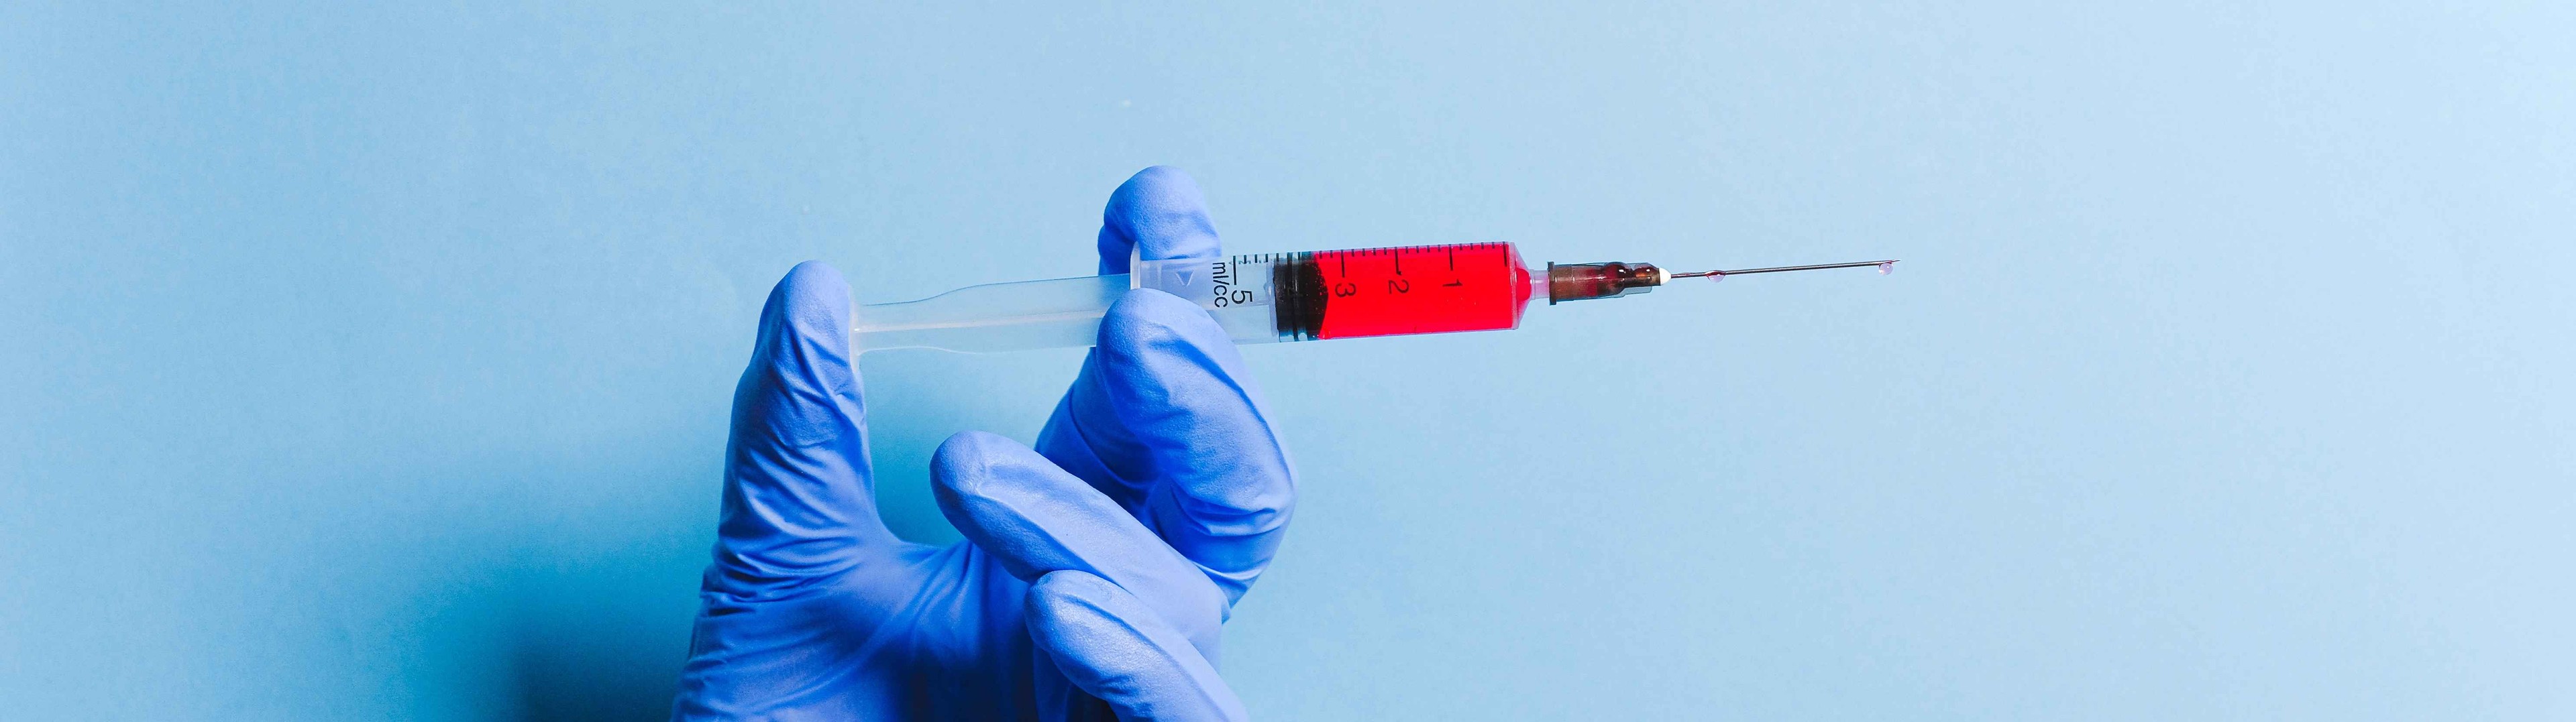 Cuarta dosis contra la Covid: cuándo y qué vacuna se administrará